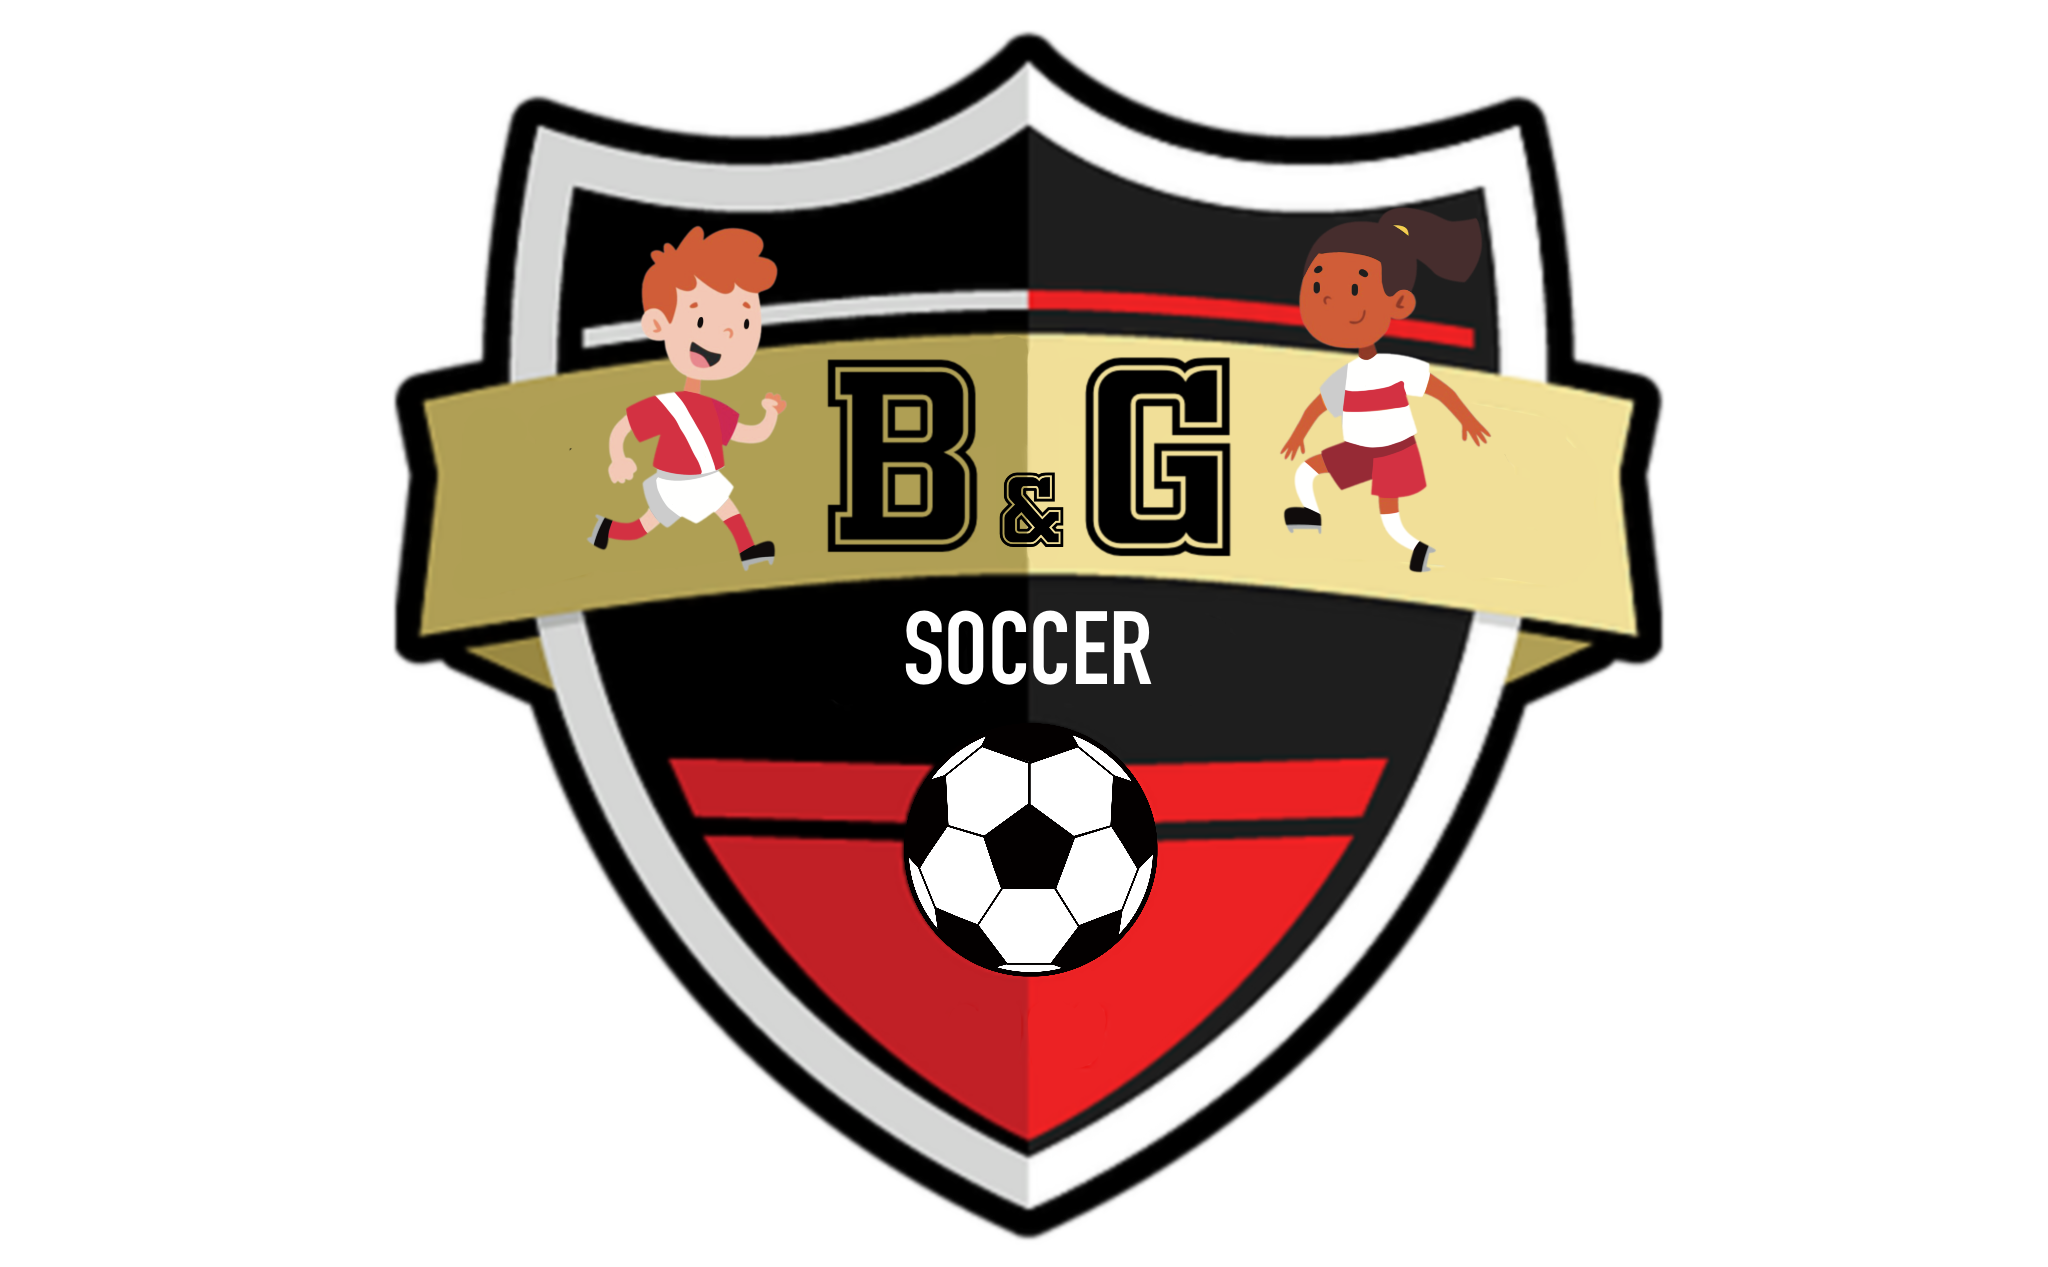 B&G Soccer